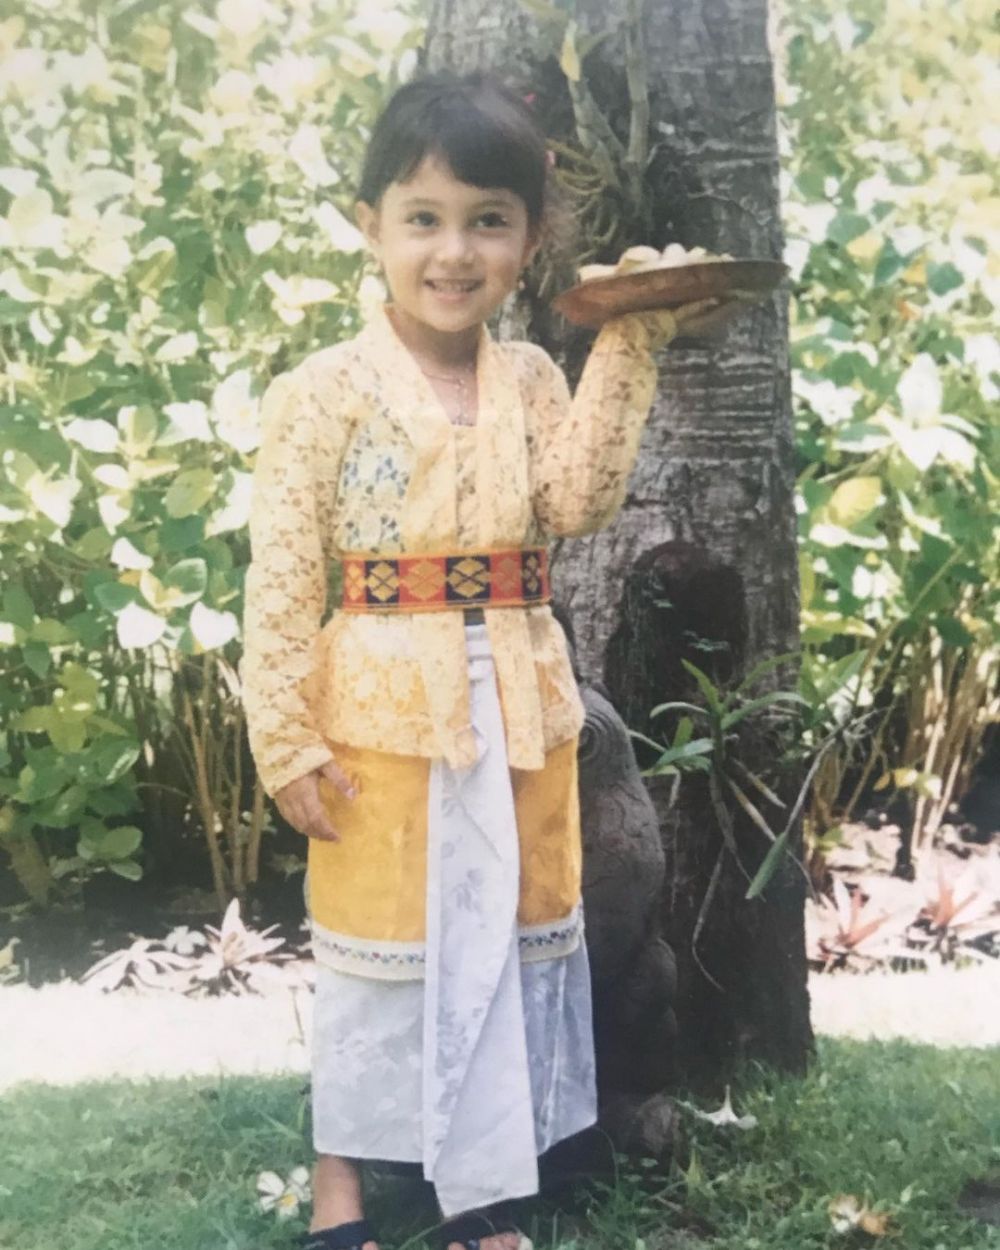 Potret masa kecil 10 seleb cantik pakai baju adat, posenya bikin gemas